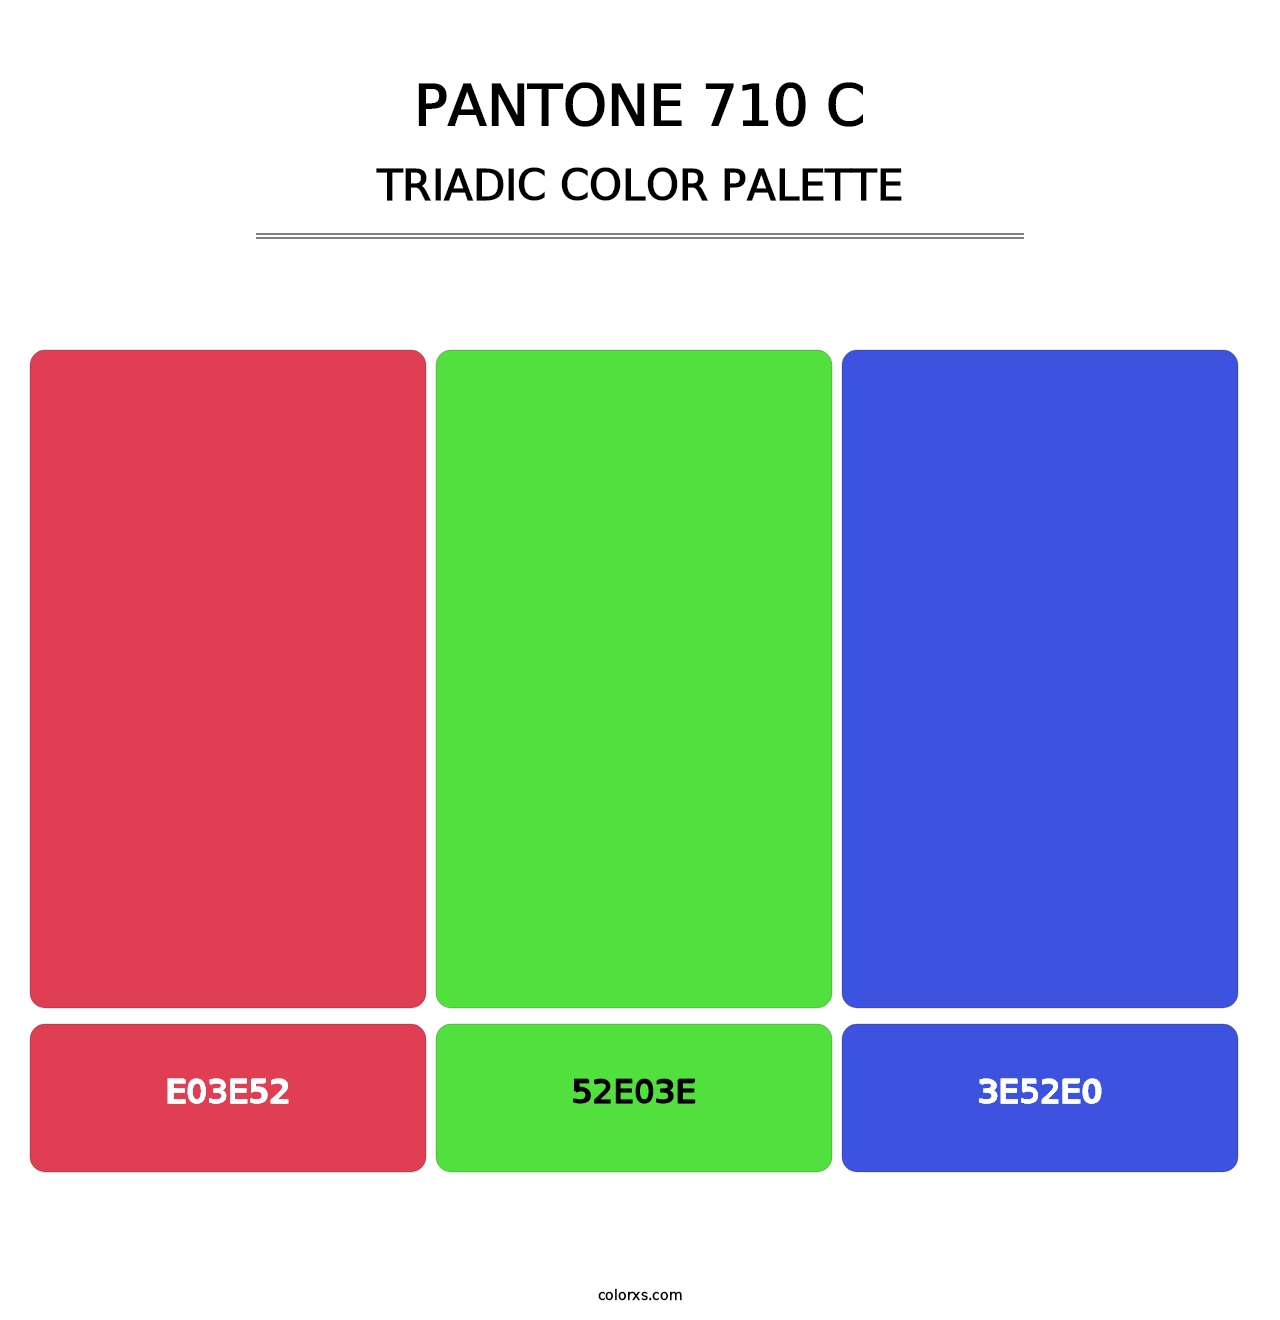 PANTONE 710 C - Triadic Color Palette